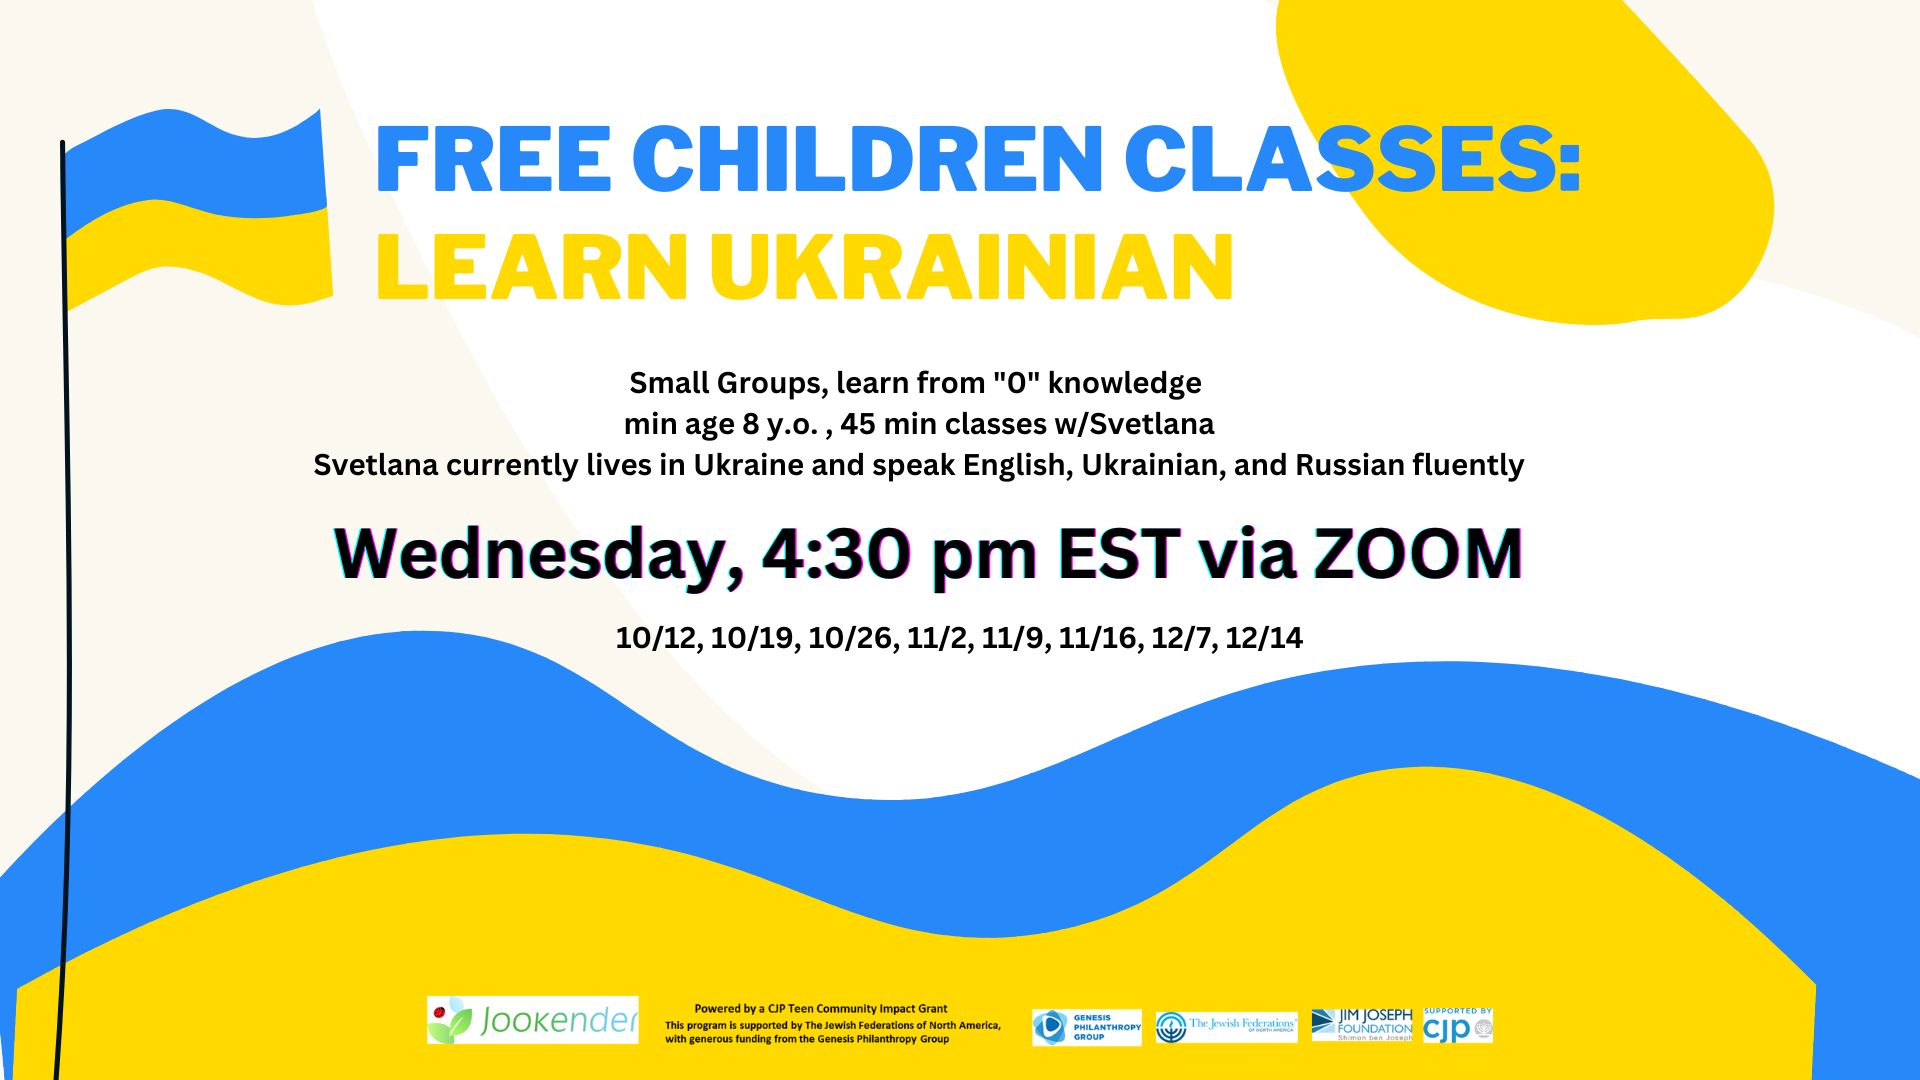 FREE: Learn Ukrainian